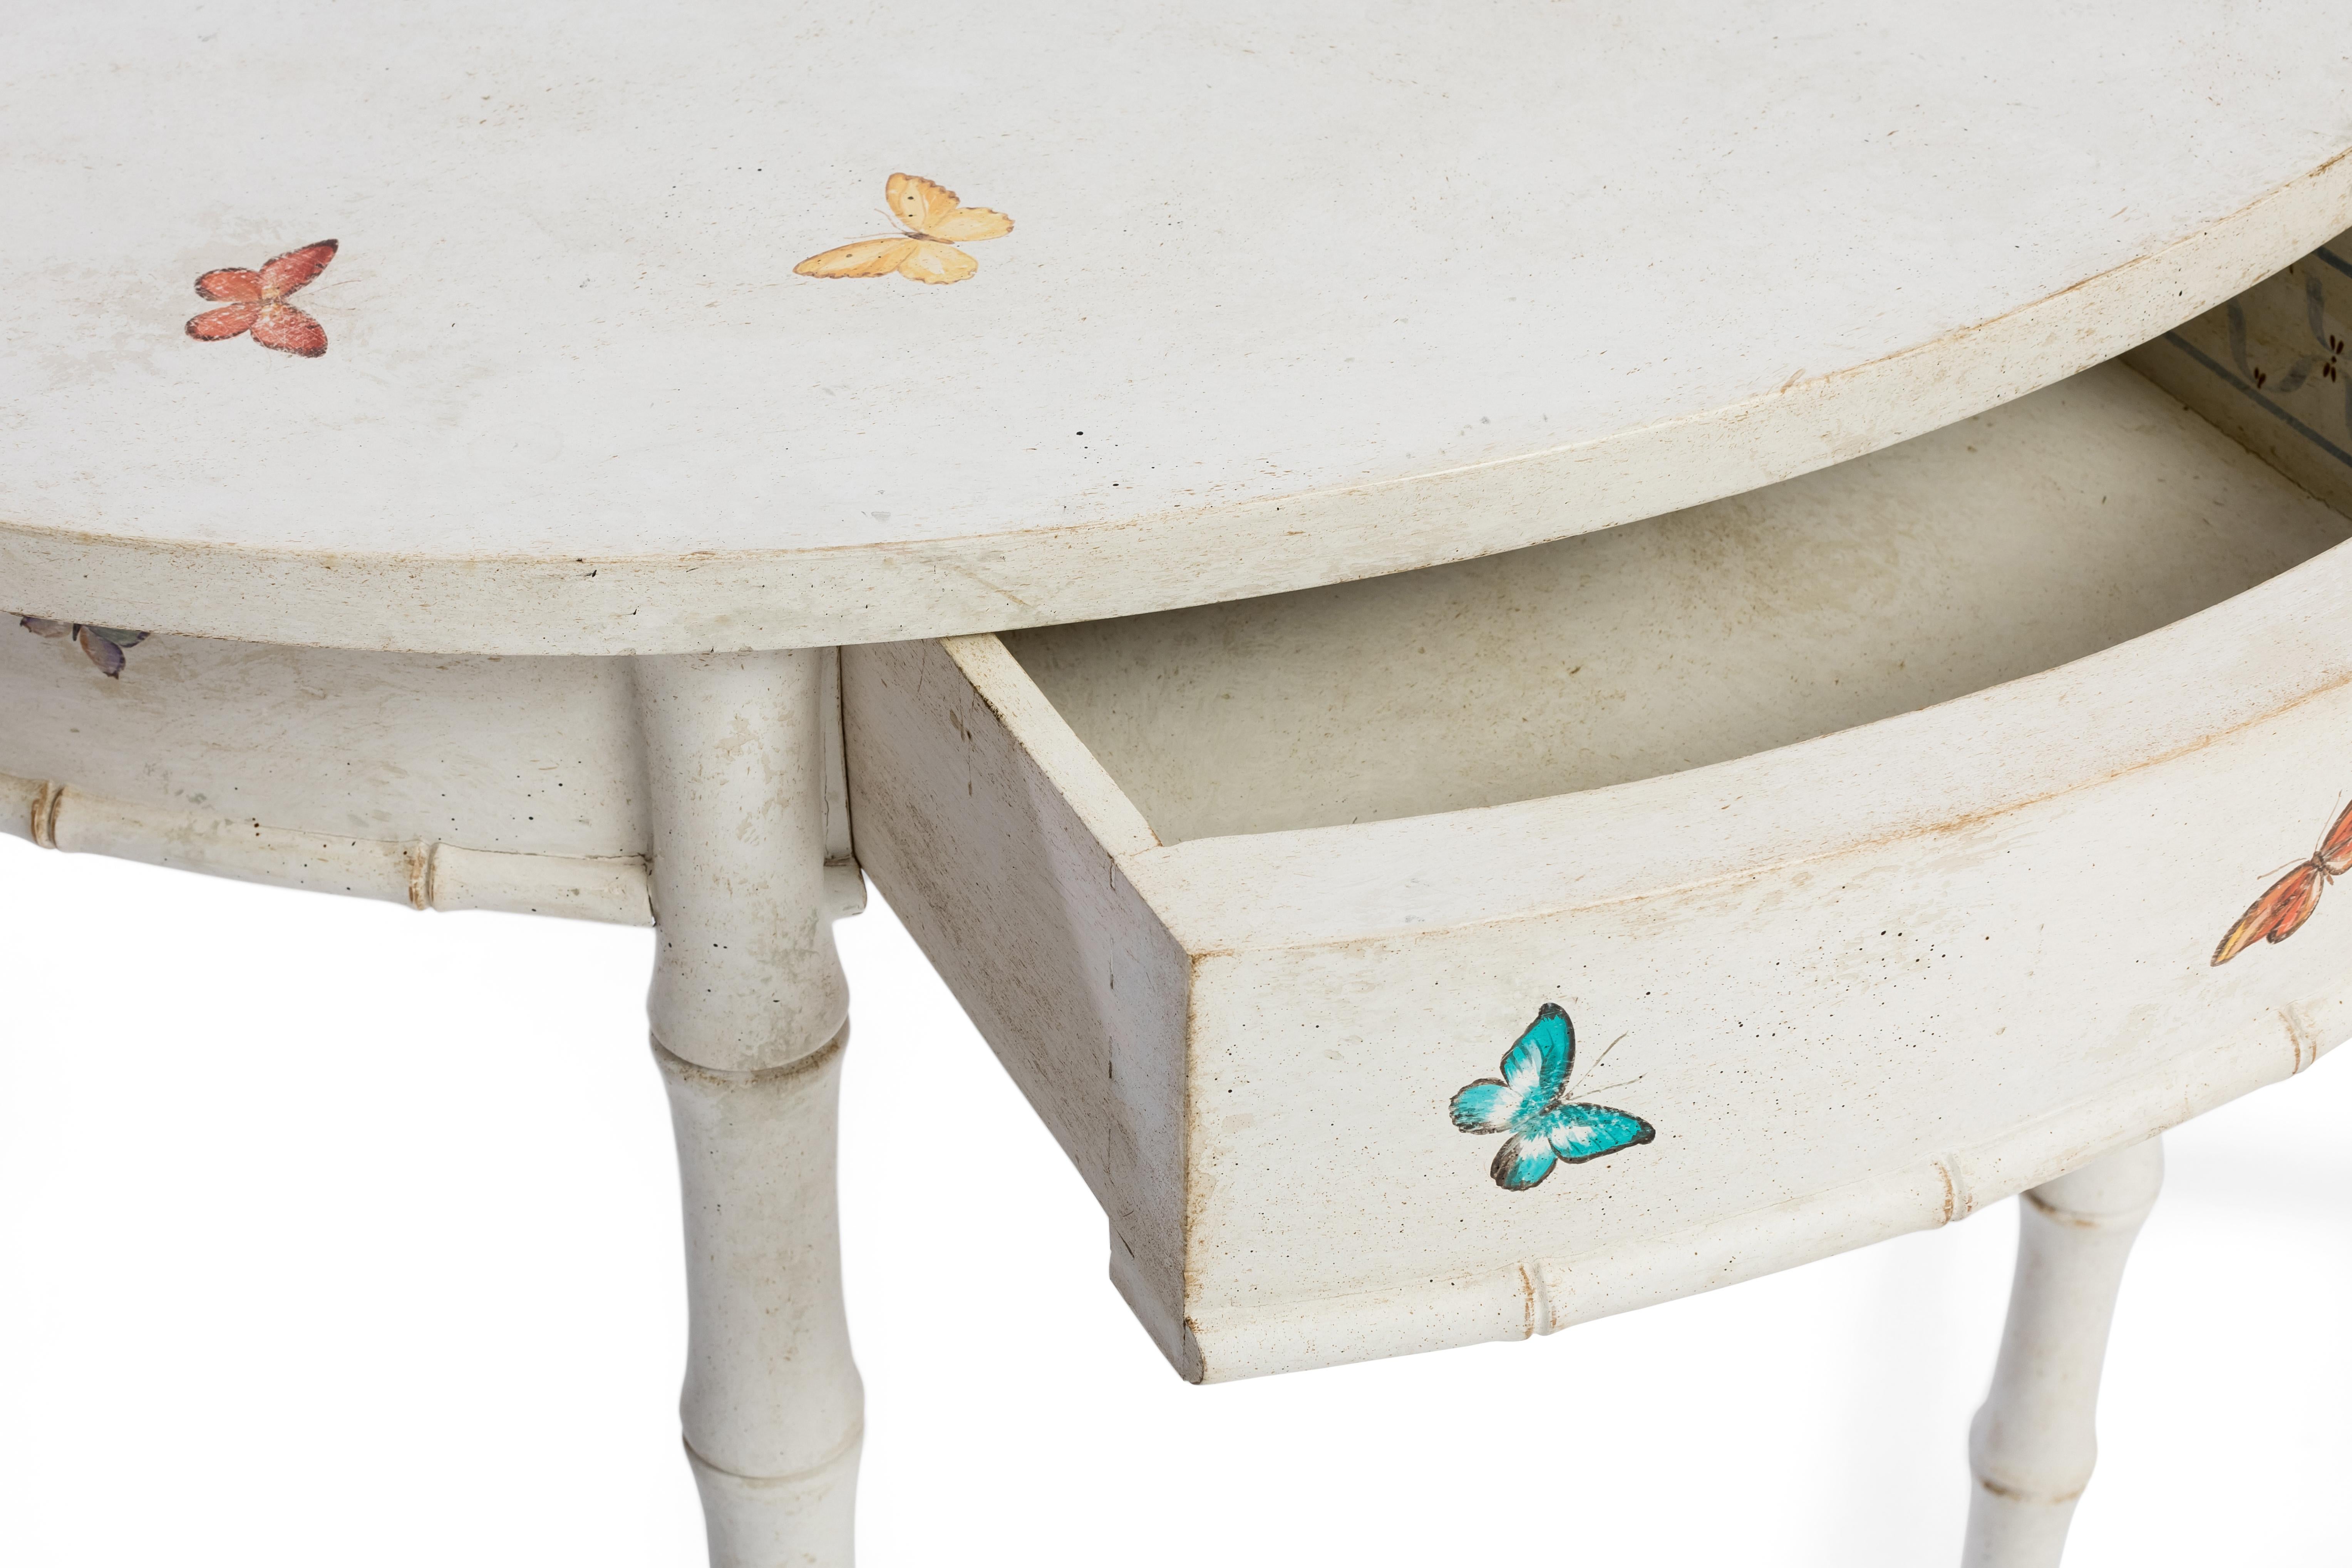 Aus unserer handbemalten Furniture Collection'S freuen wir uns, Ihnen unsere Ravenna Demilune aus Bambus vorzustellen. 
In zeitlosem Kreideweiß gehalten und mit süßen Schmetterlingsdekoren versehen, verleiht diese eklektische Demilune jedem Raum -